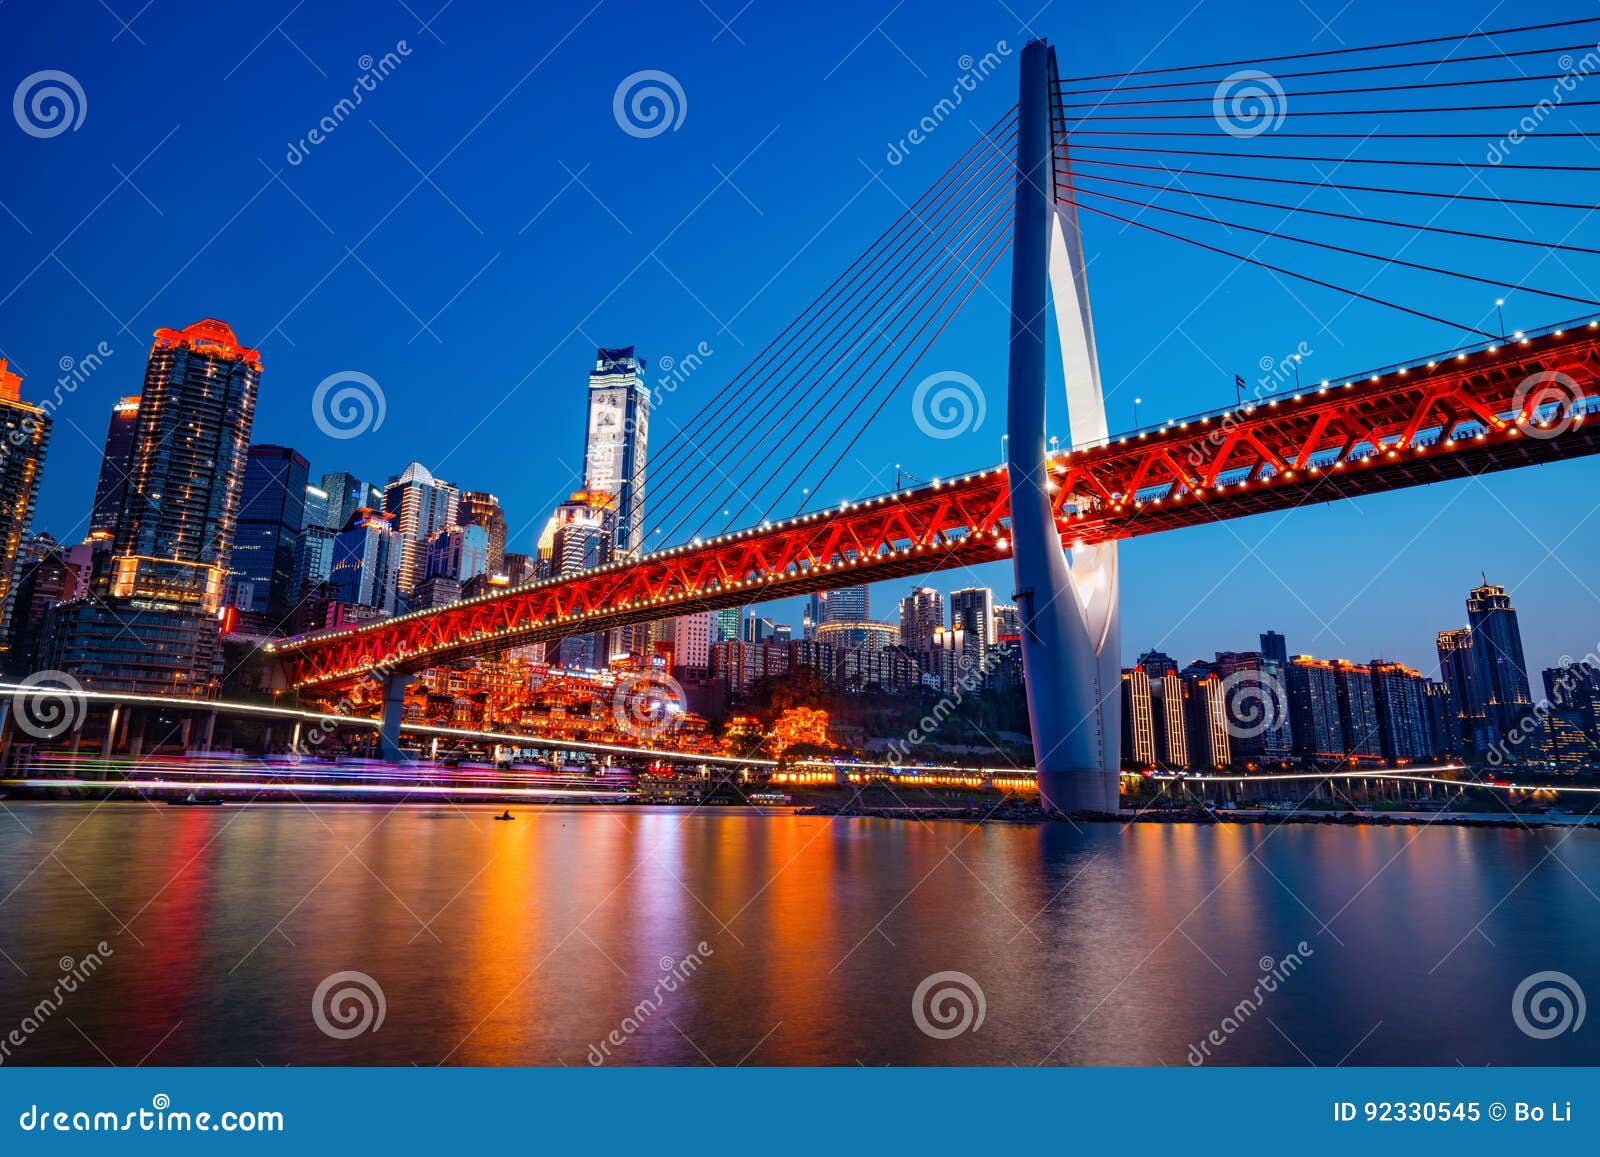 chongqing dongshuimen bridge at night